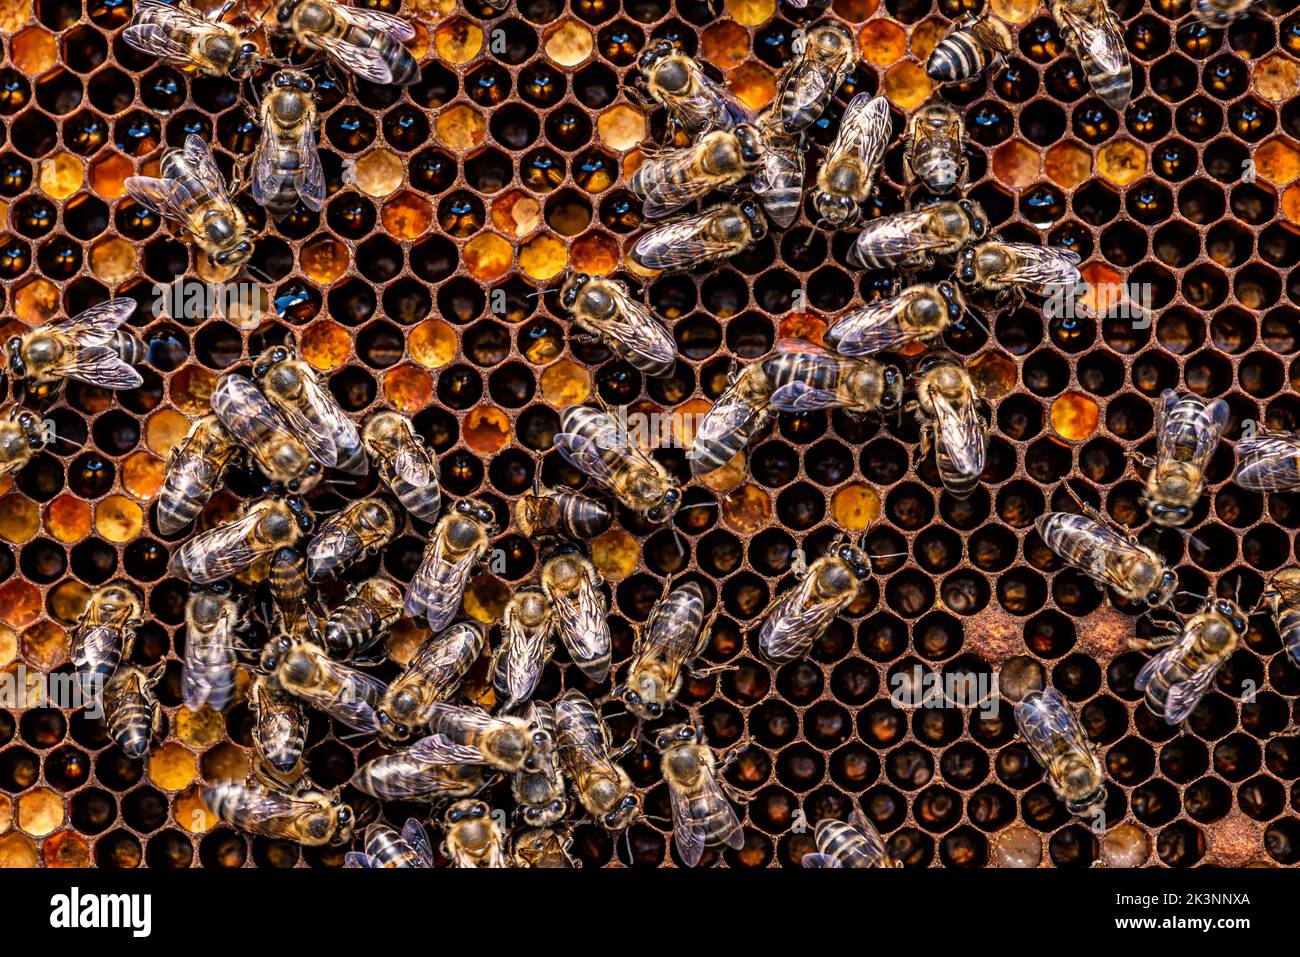 Api mellifere in alveare con miele, larve visibili e api regine Foto Stock